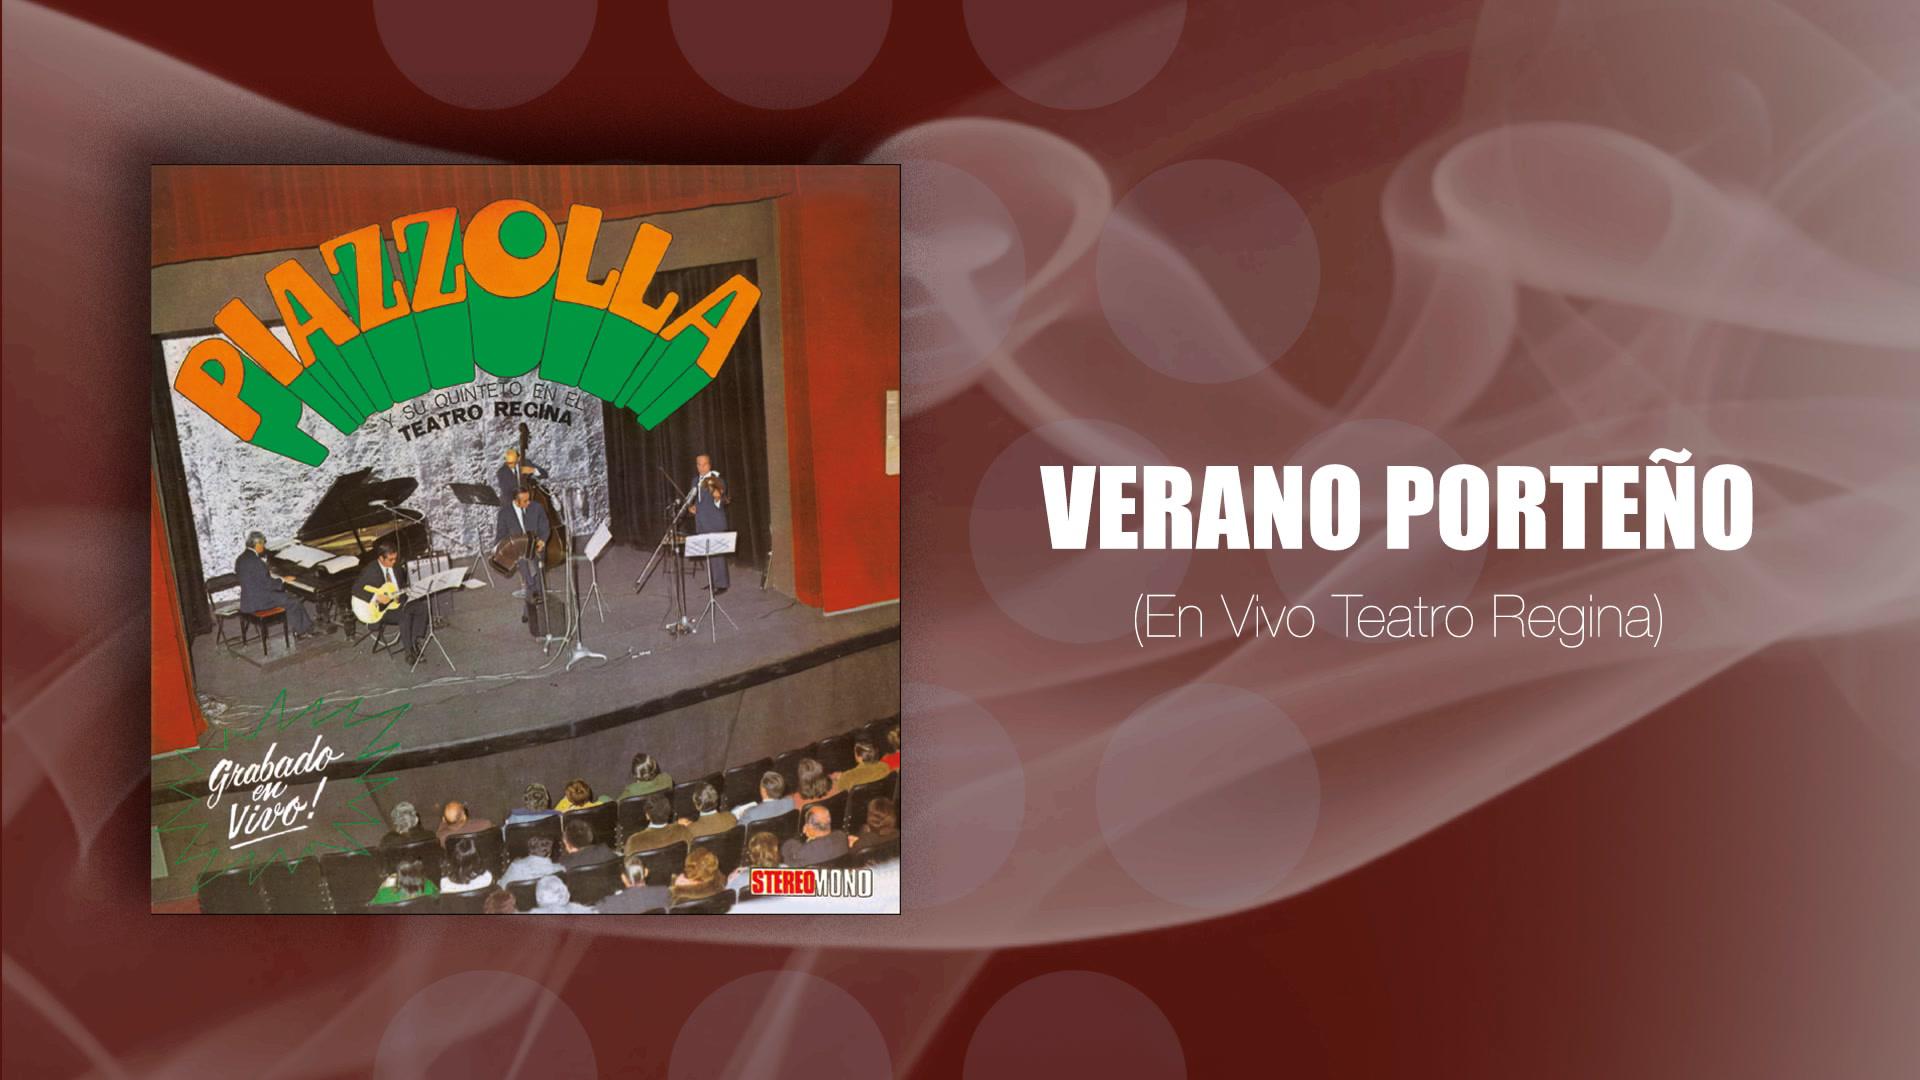 Ástor Pantaleón Piazzolla - Verano Porteño (En Vivo Teatro Regina) (Official Audio)